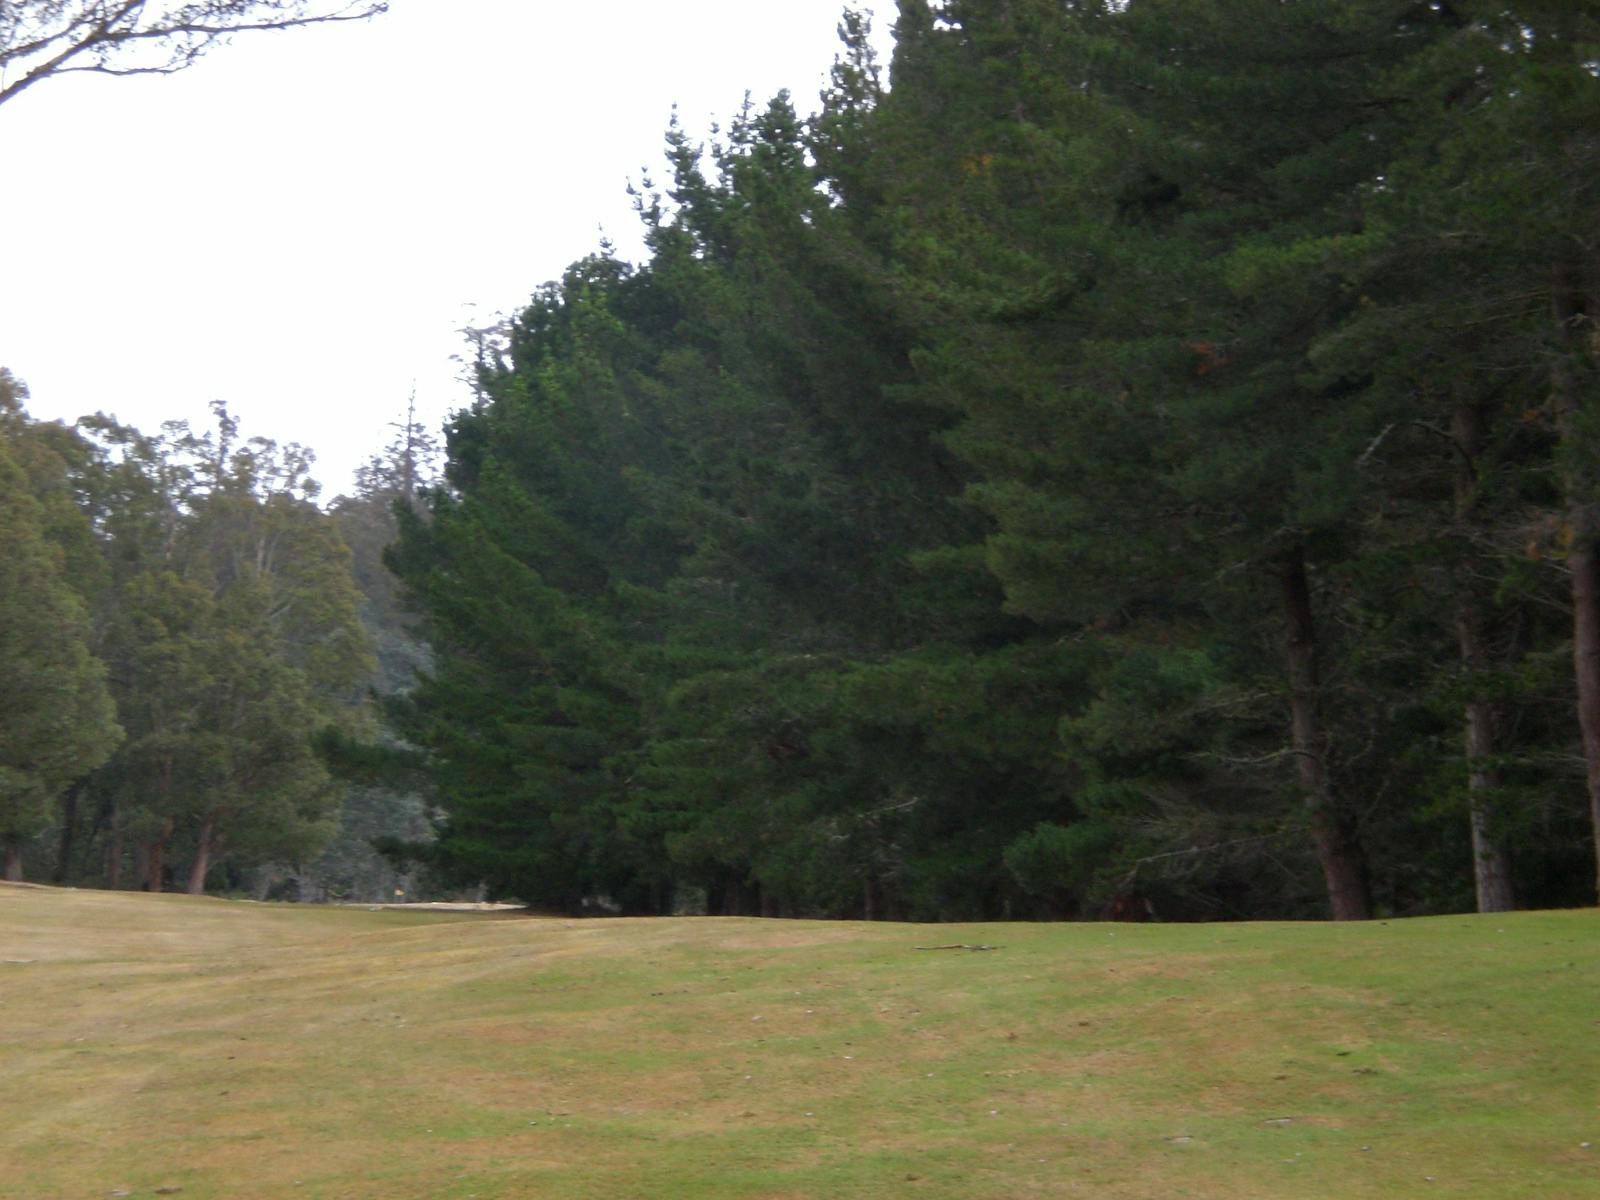 Tarraleah 9 hole golf course is Tasmania's highest golf course.